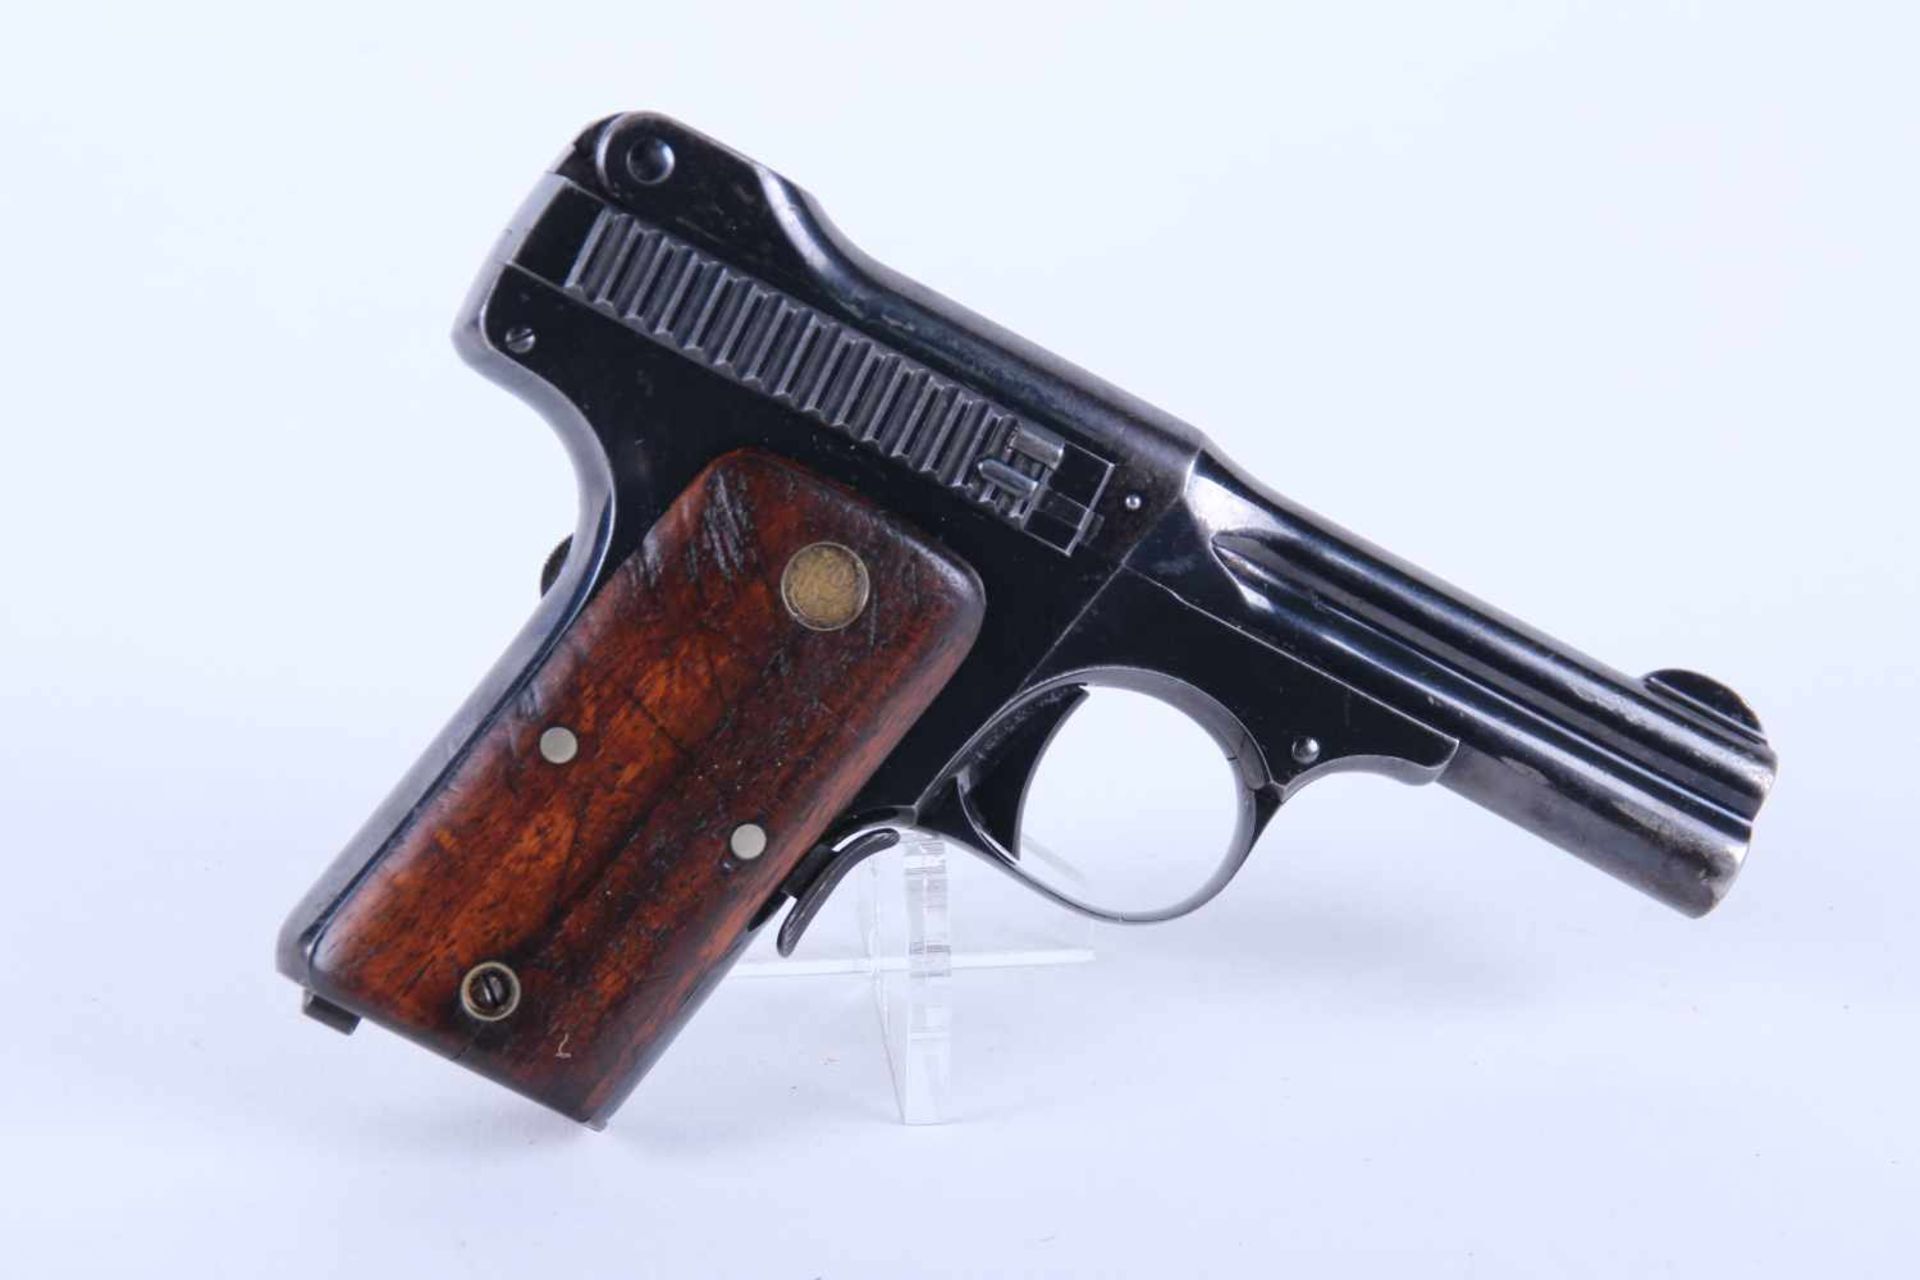 Pistolet Smith & Wesson Mod 35 Catégorie B. Calibre 32 Smith & Wesson. Plaquette en bois, chargeur - Bild 3 aus 3